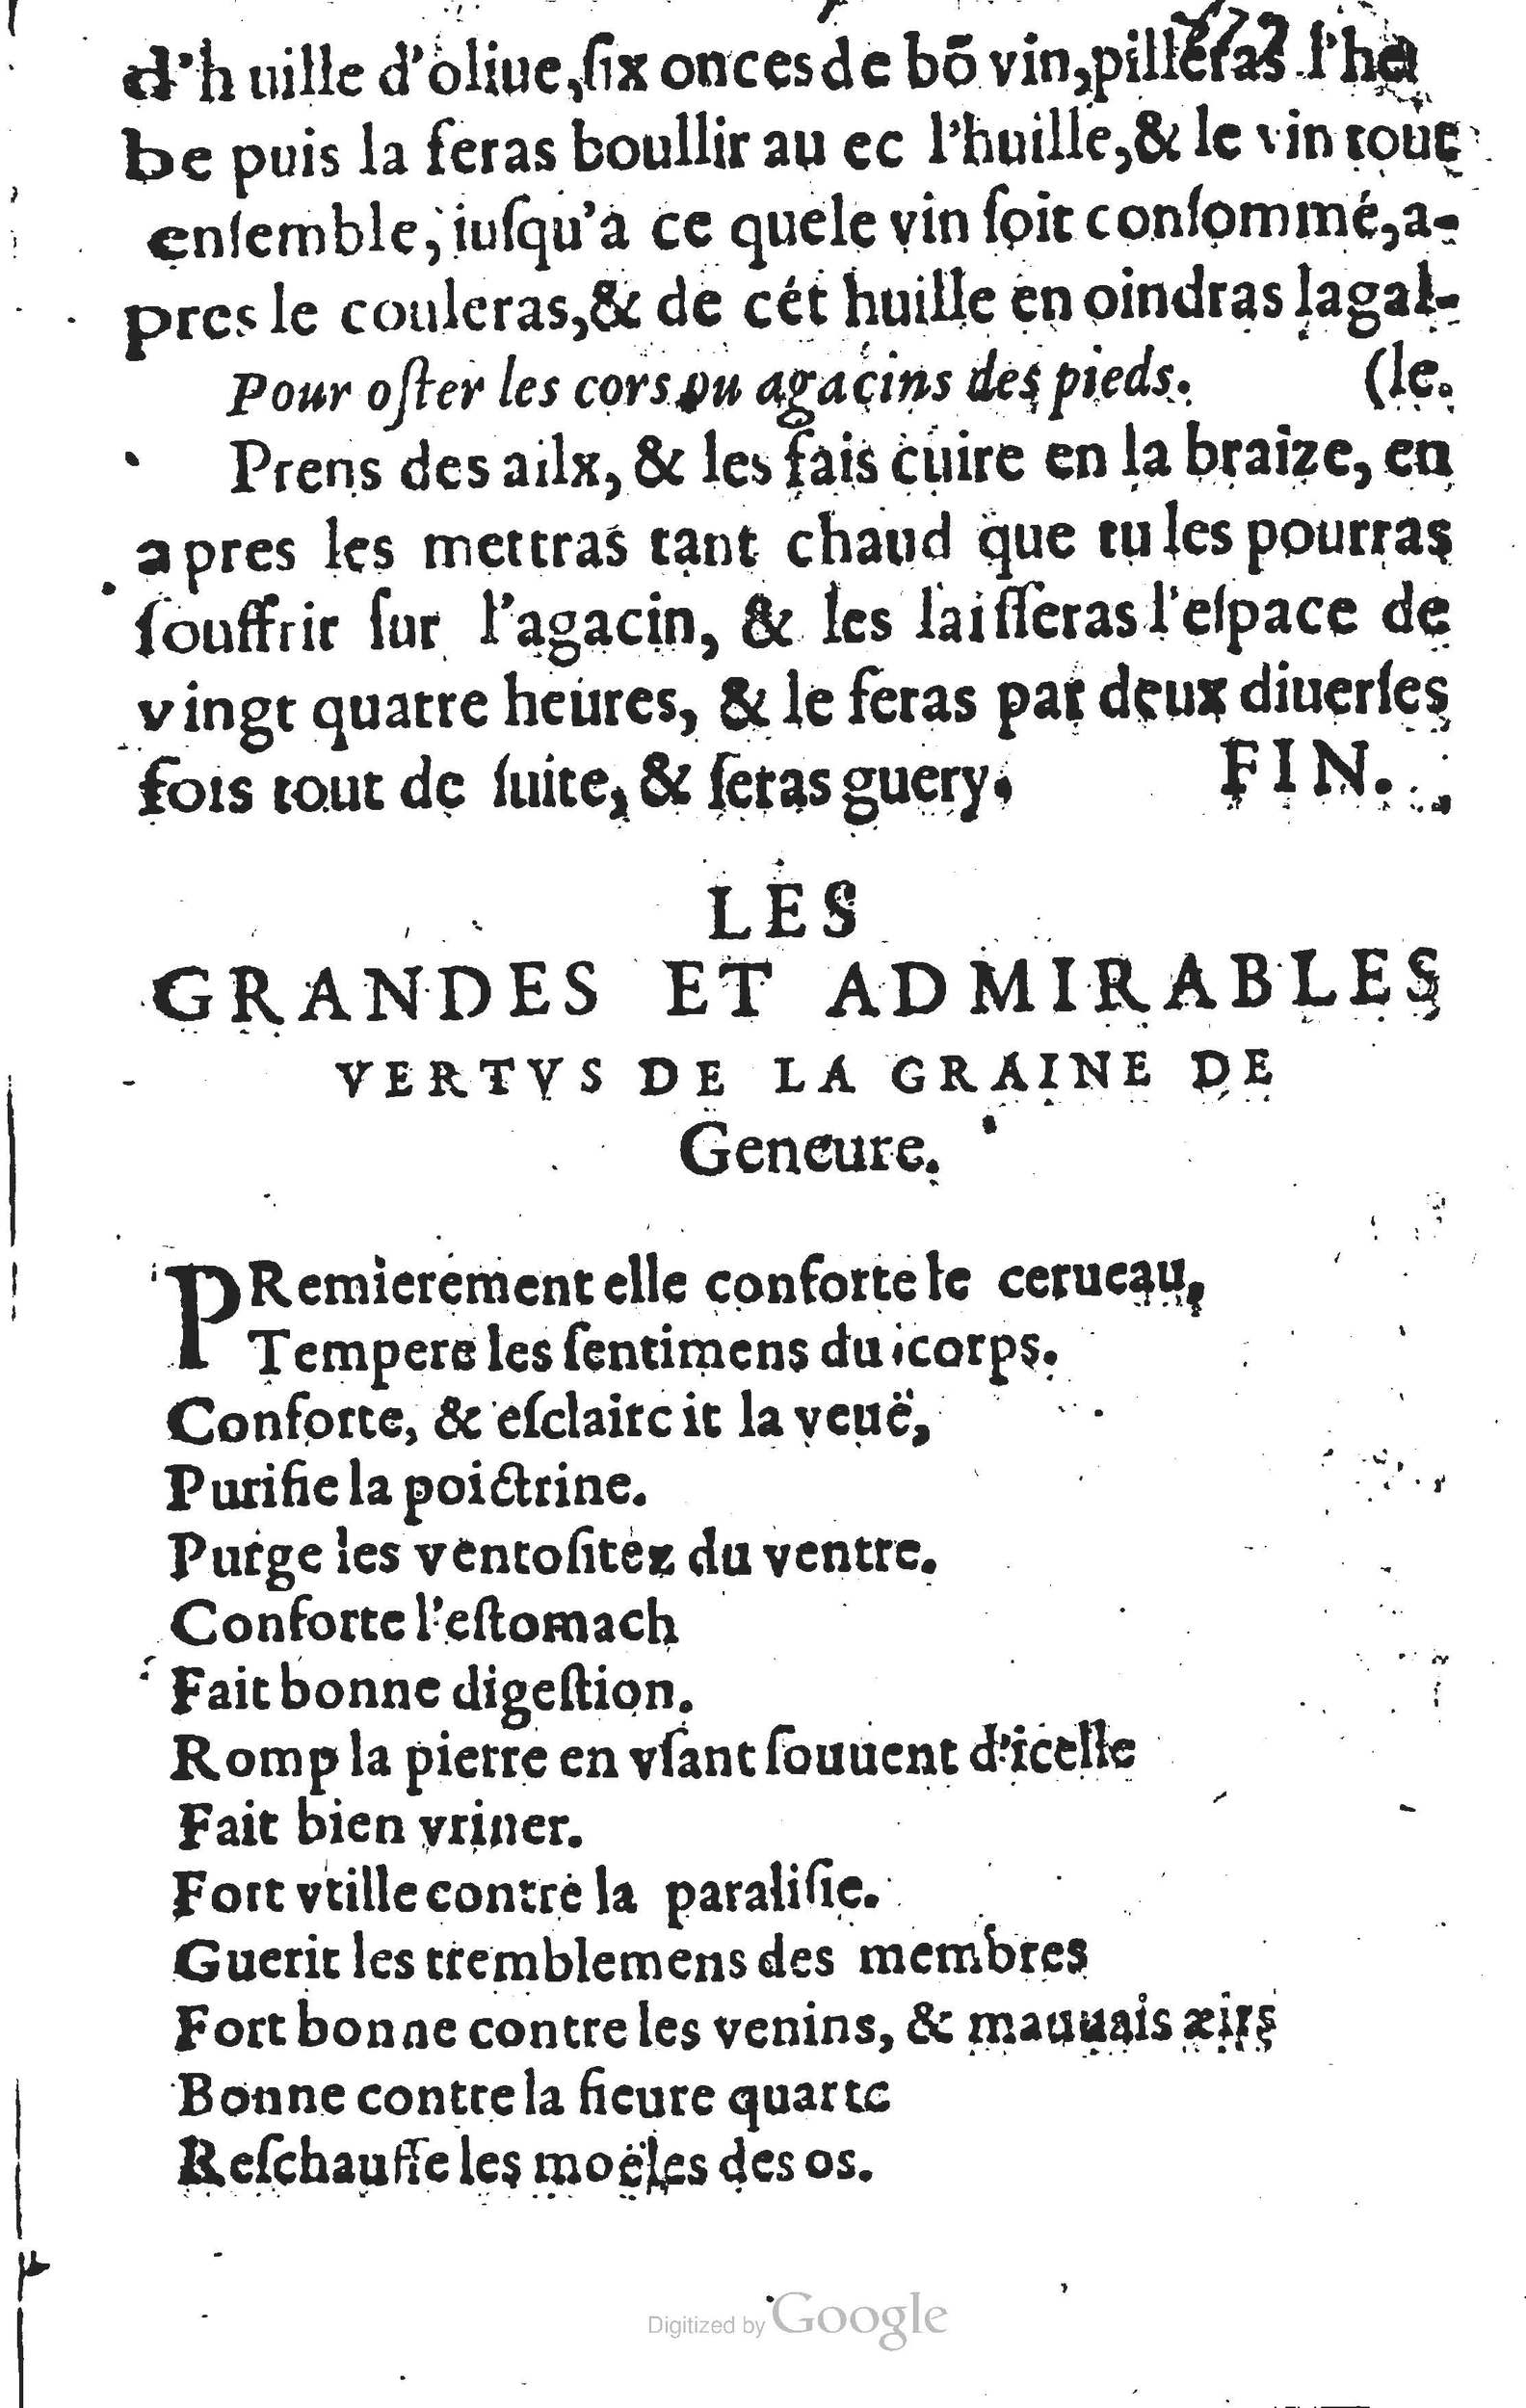 1623 Pierre Marniolles Trésor des secrets naturels BM Lyon_Page_7.jpg